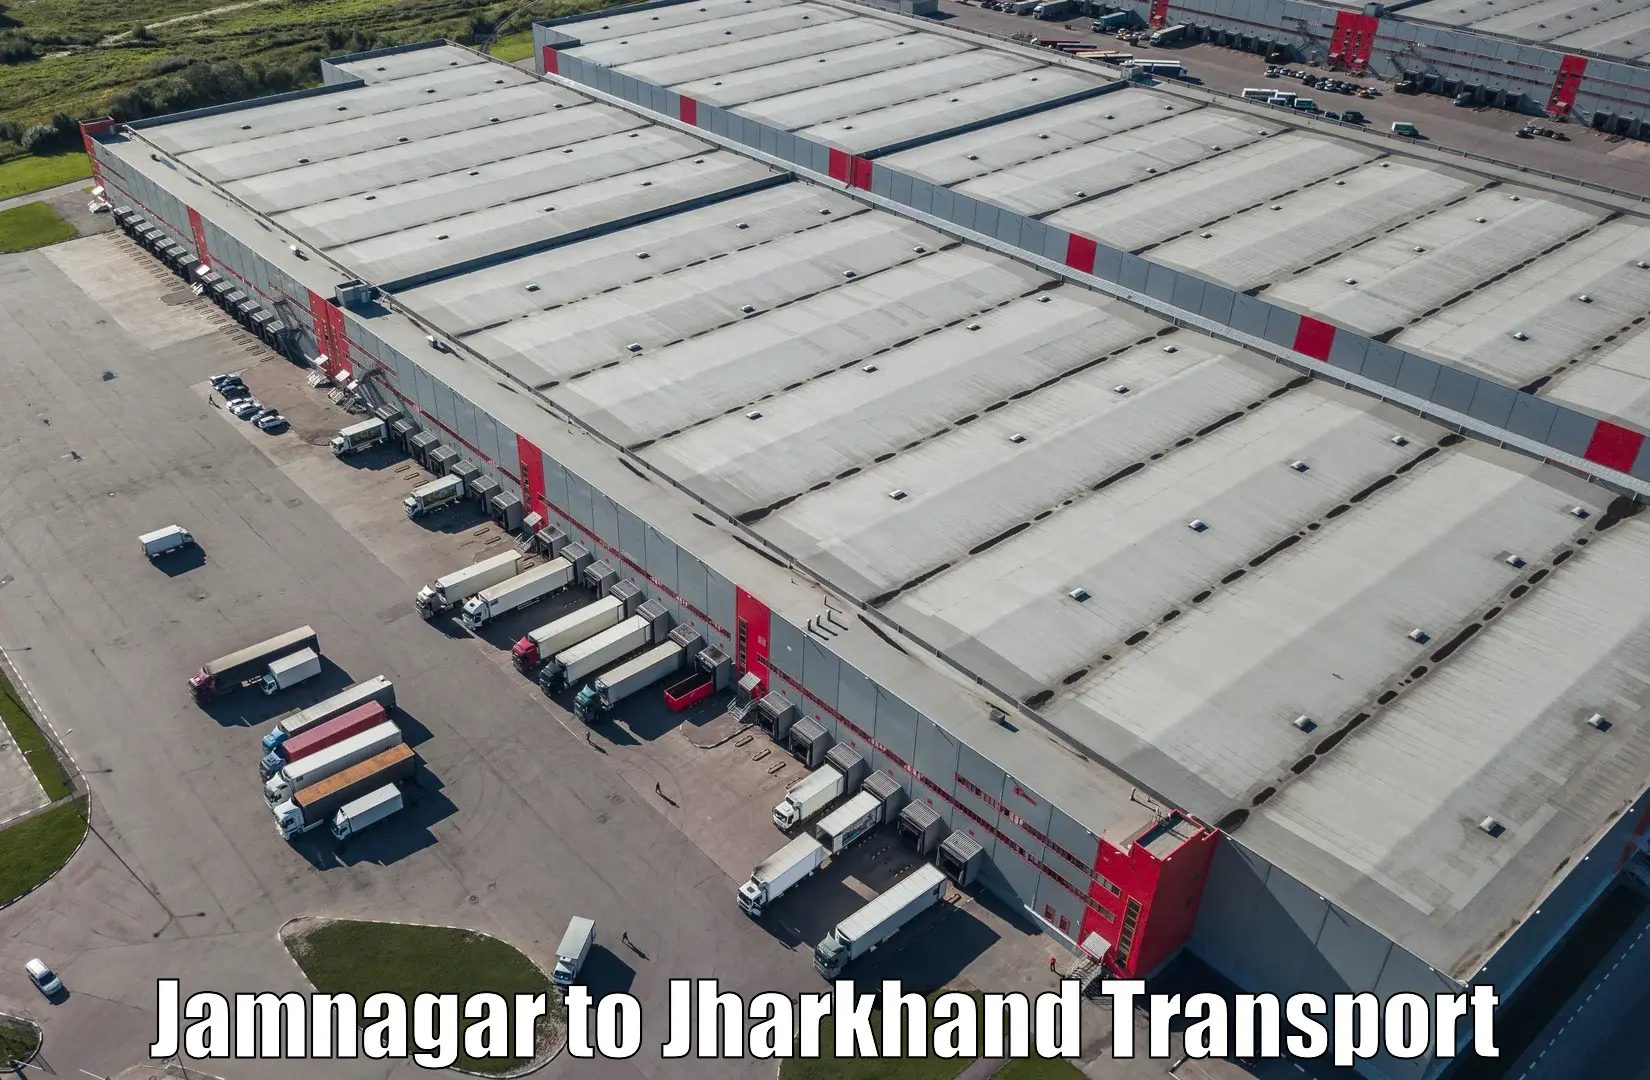 India truck logistics services Jamnagar to Hazaribagh